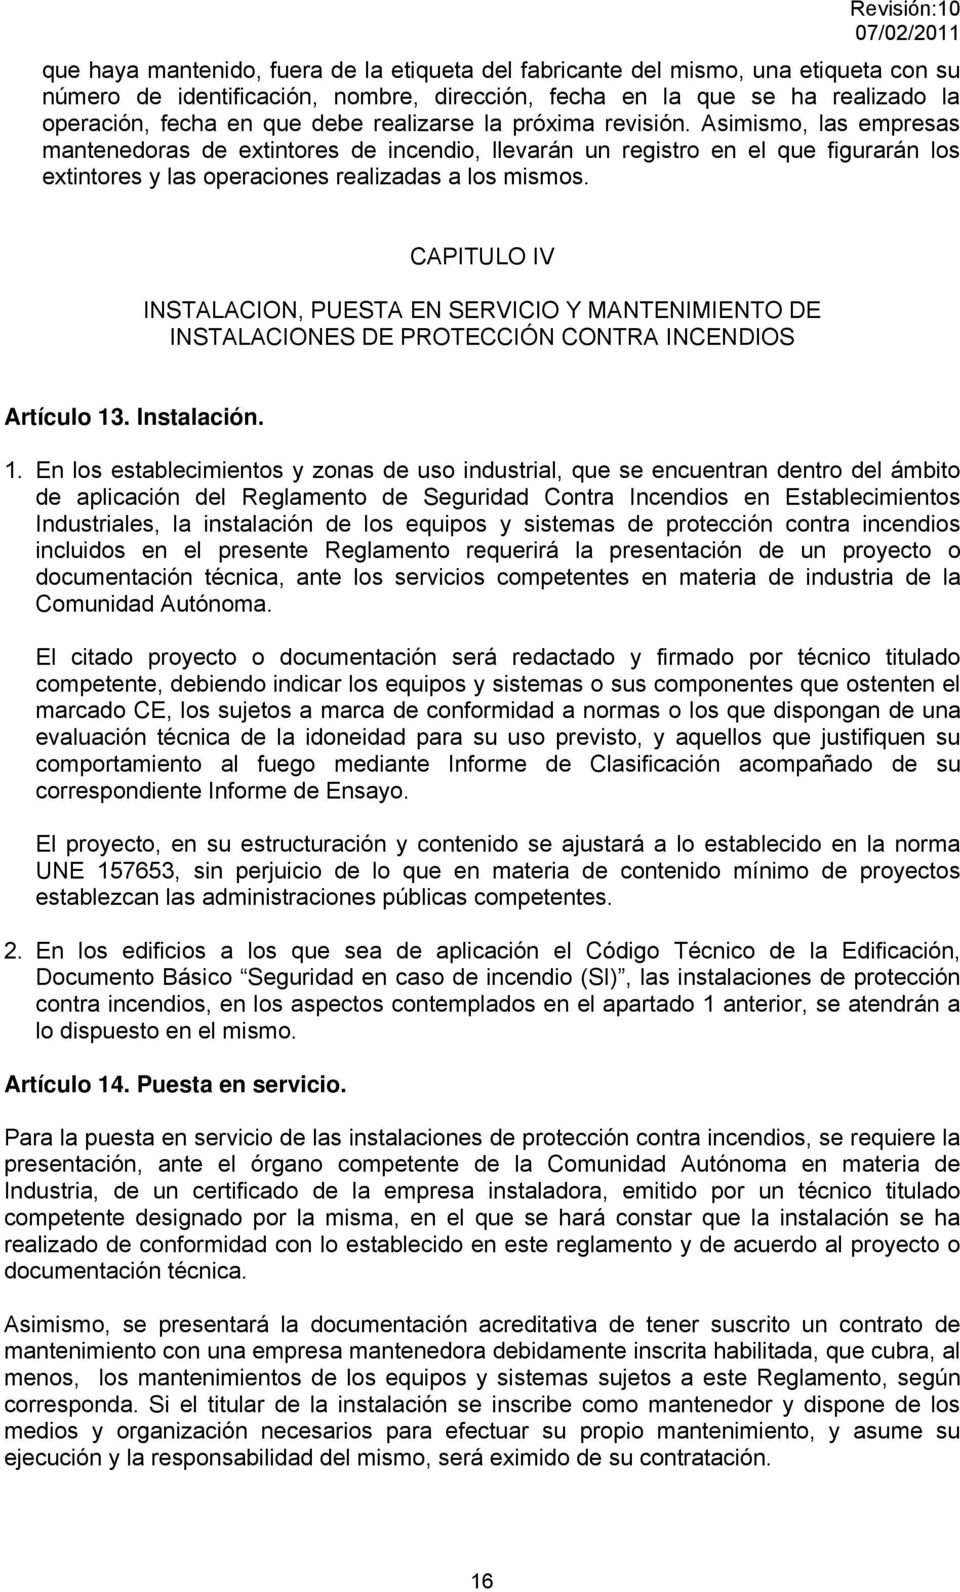 CAPITULO IV INSTALACION, PUESTA EN SERVICIO Y MANTENIMIENTO DE INSTALACIONES DE PROTECCIÓN CONTRA INCENDIOS Artículo 13